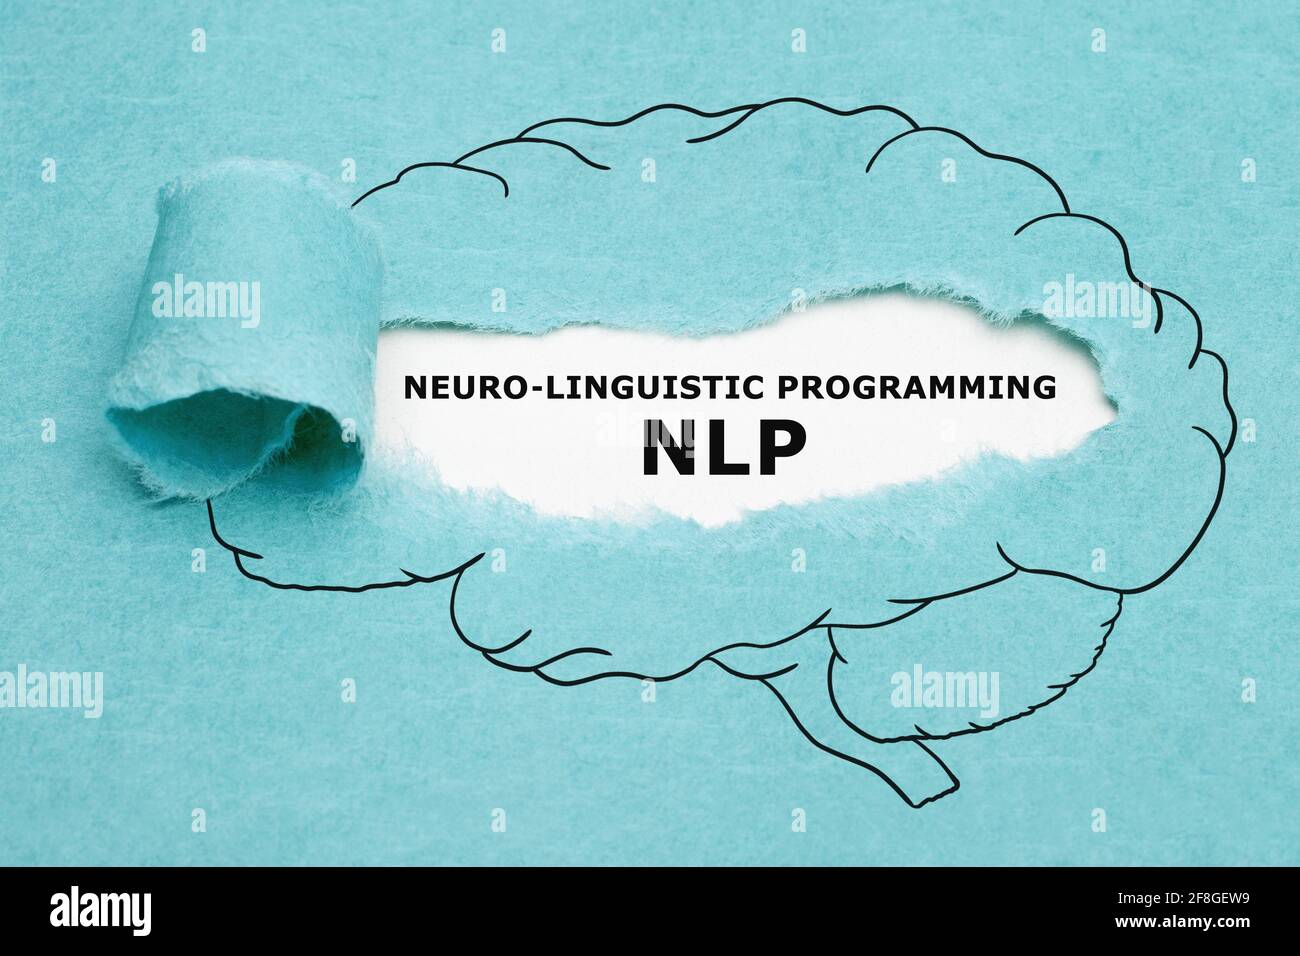 Acronyme imprimé NLP Neuro linguistique Programming apparaissant derrière un papier bleu déchiré dans le dessin du cerveau humain. Banque D'Images